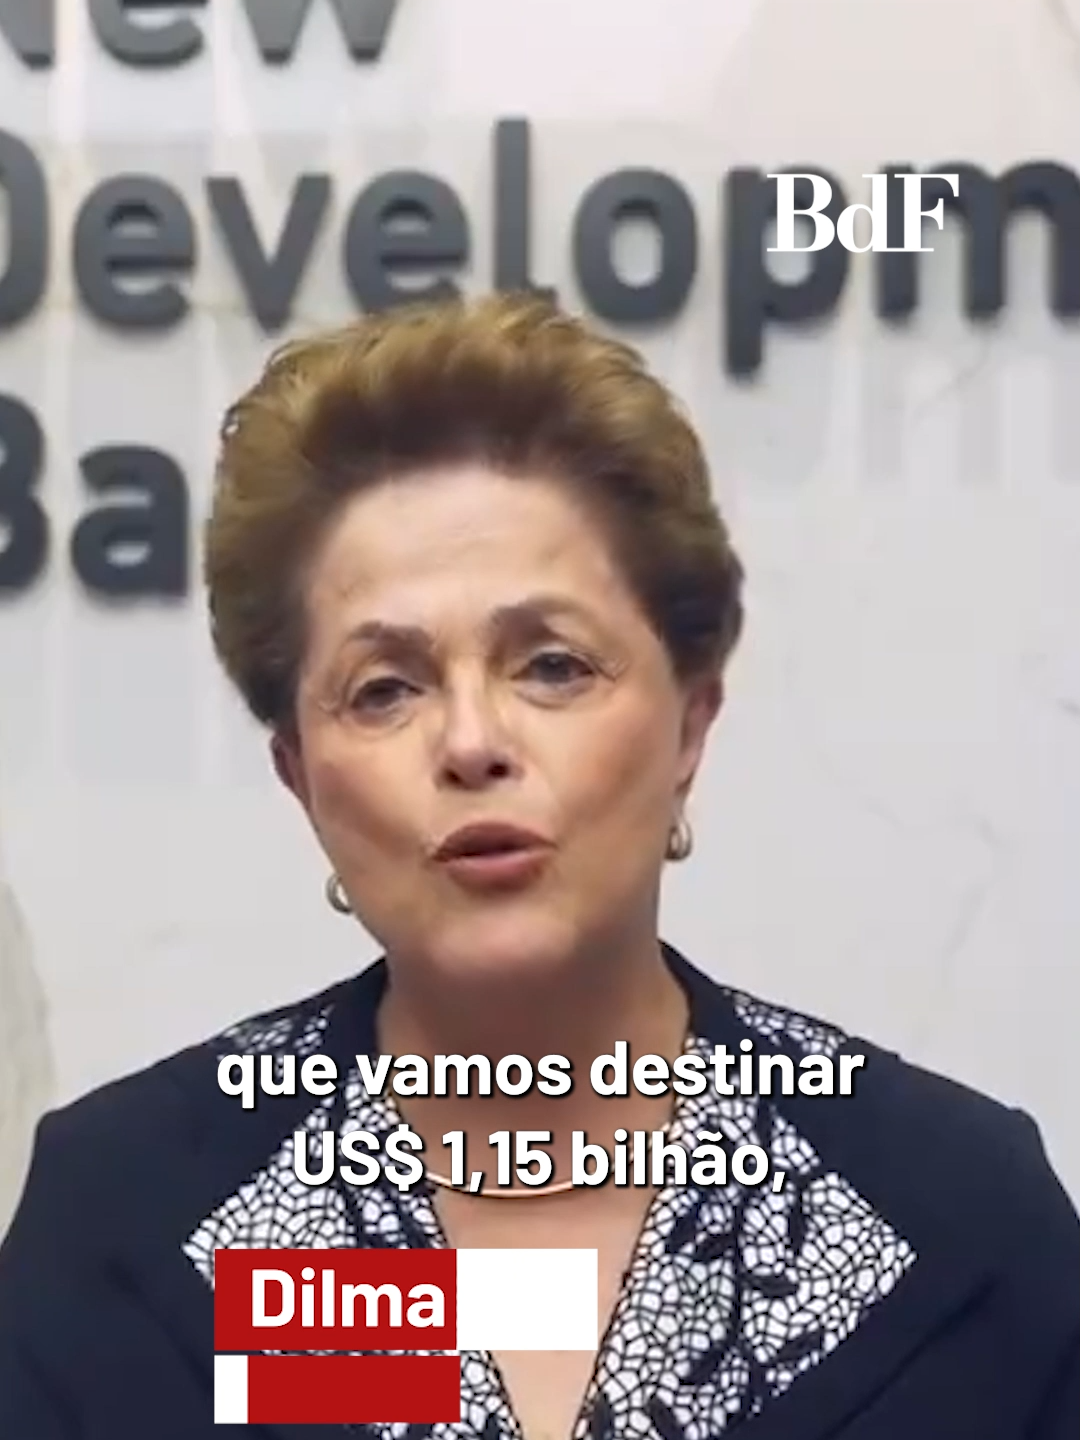 Ajuda humanitária 🤝🏻 Dilma Rousseff, presidenta do Novo Banco de Desenvolvimento (NDB) — antigo Banco do Brics — anunciou, hoje (14), que a instituição vai ajudar no financiamento de obras de reconstrução no Rio Grande do Sul, atingido por fortes enchentes, com R$ 5,75 bilhões. Dilma conversou com o presidente Lula (PT) e com o governador do estado, Eduardo Leite (PSDB), para acertar o repasse da verba que deverá ser utilizada em obras de infraestrutura urbana, saneamento básico, proteção ambiental e prevenção de desastres no estado. “O Novo Banco de Desenvolvimento vai destinar R$ 5,75 bilhões para o estado do Rio Grande do Sul, com o objetivo de reconstruir a infraestrutura urbana e rural nos municípios atingidos pelas fortes enchentes ocorridas desde o final de abril e ajudar na retomada da vida gaúcha”, afirmou a ex-presidenta da República. #BrasildeFato